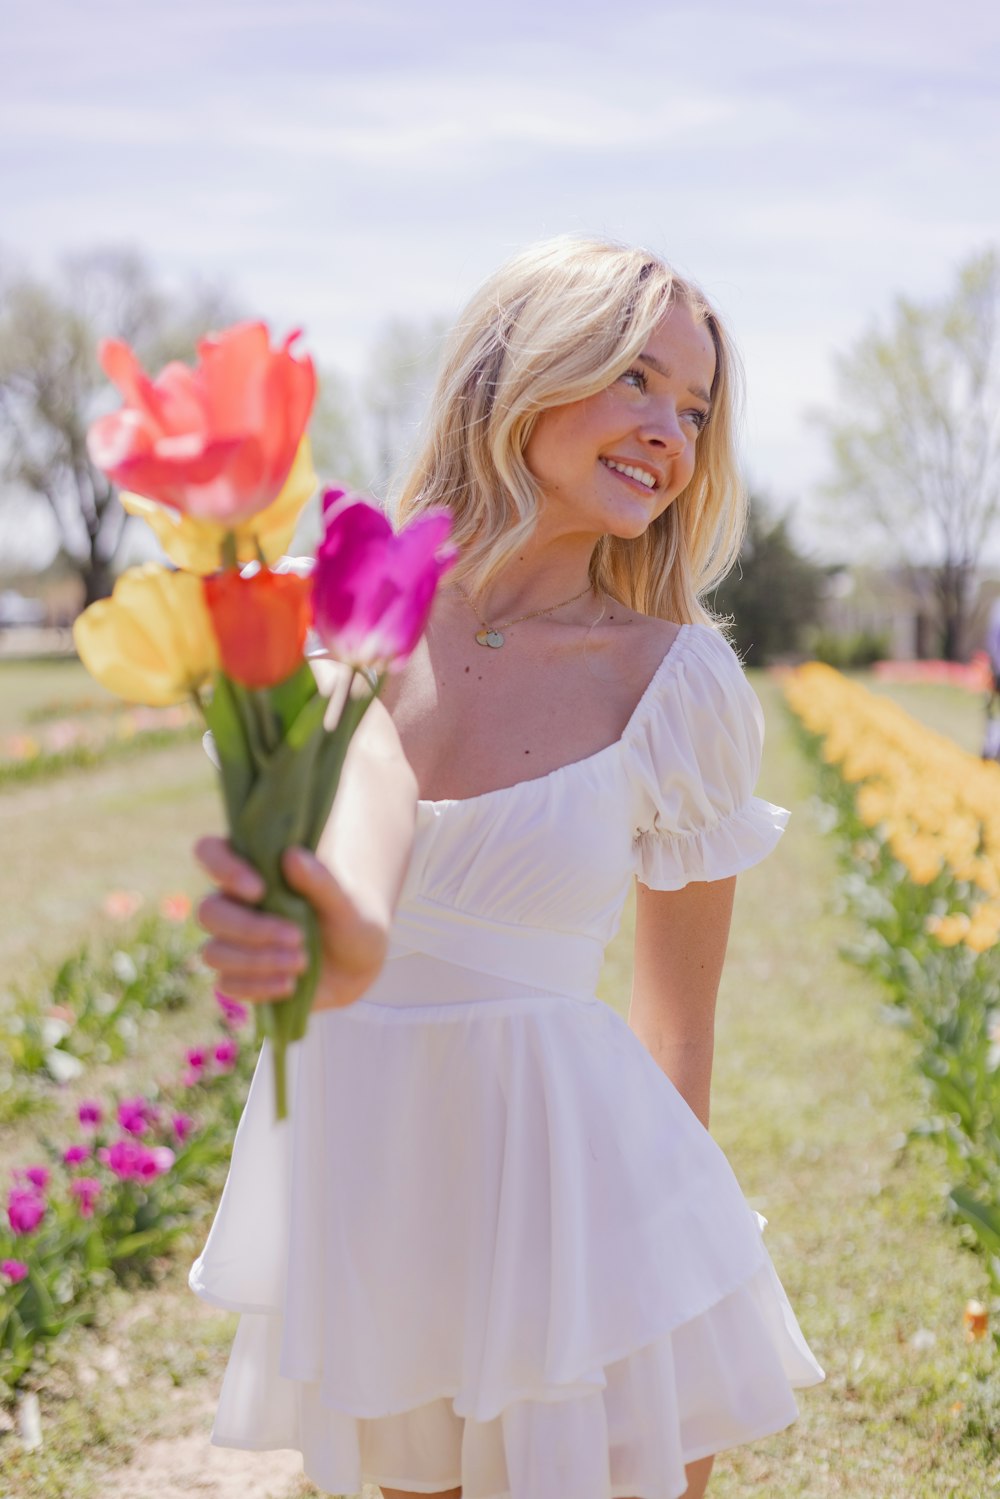 Une femme en robe blanche tenant un bouquet de fleurs